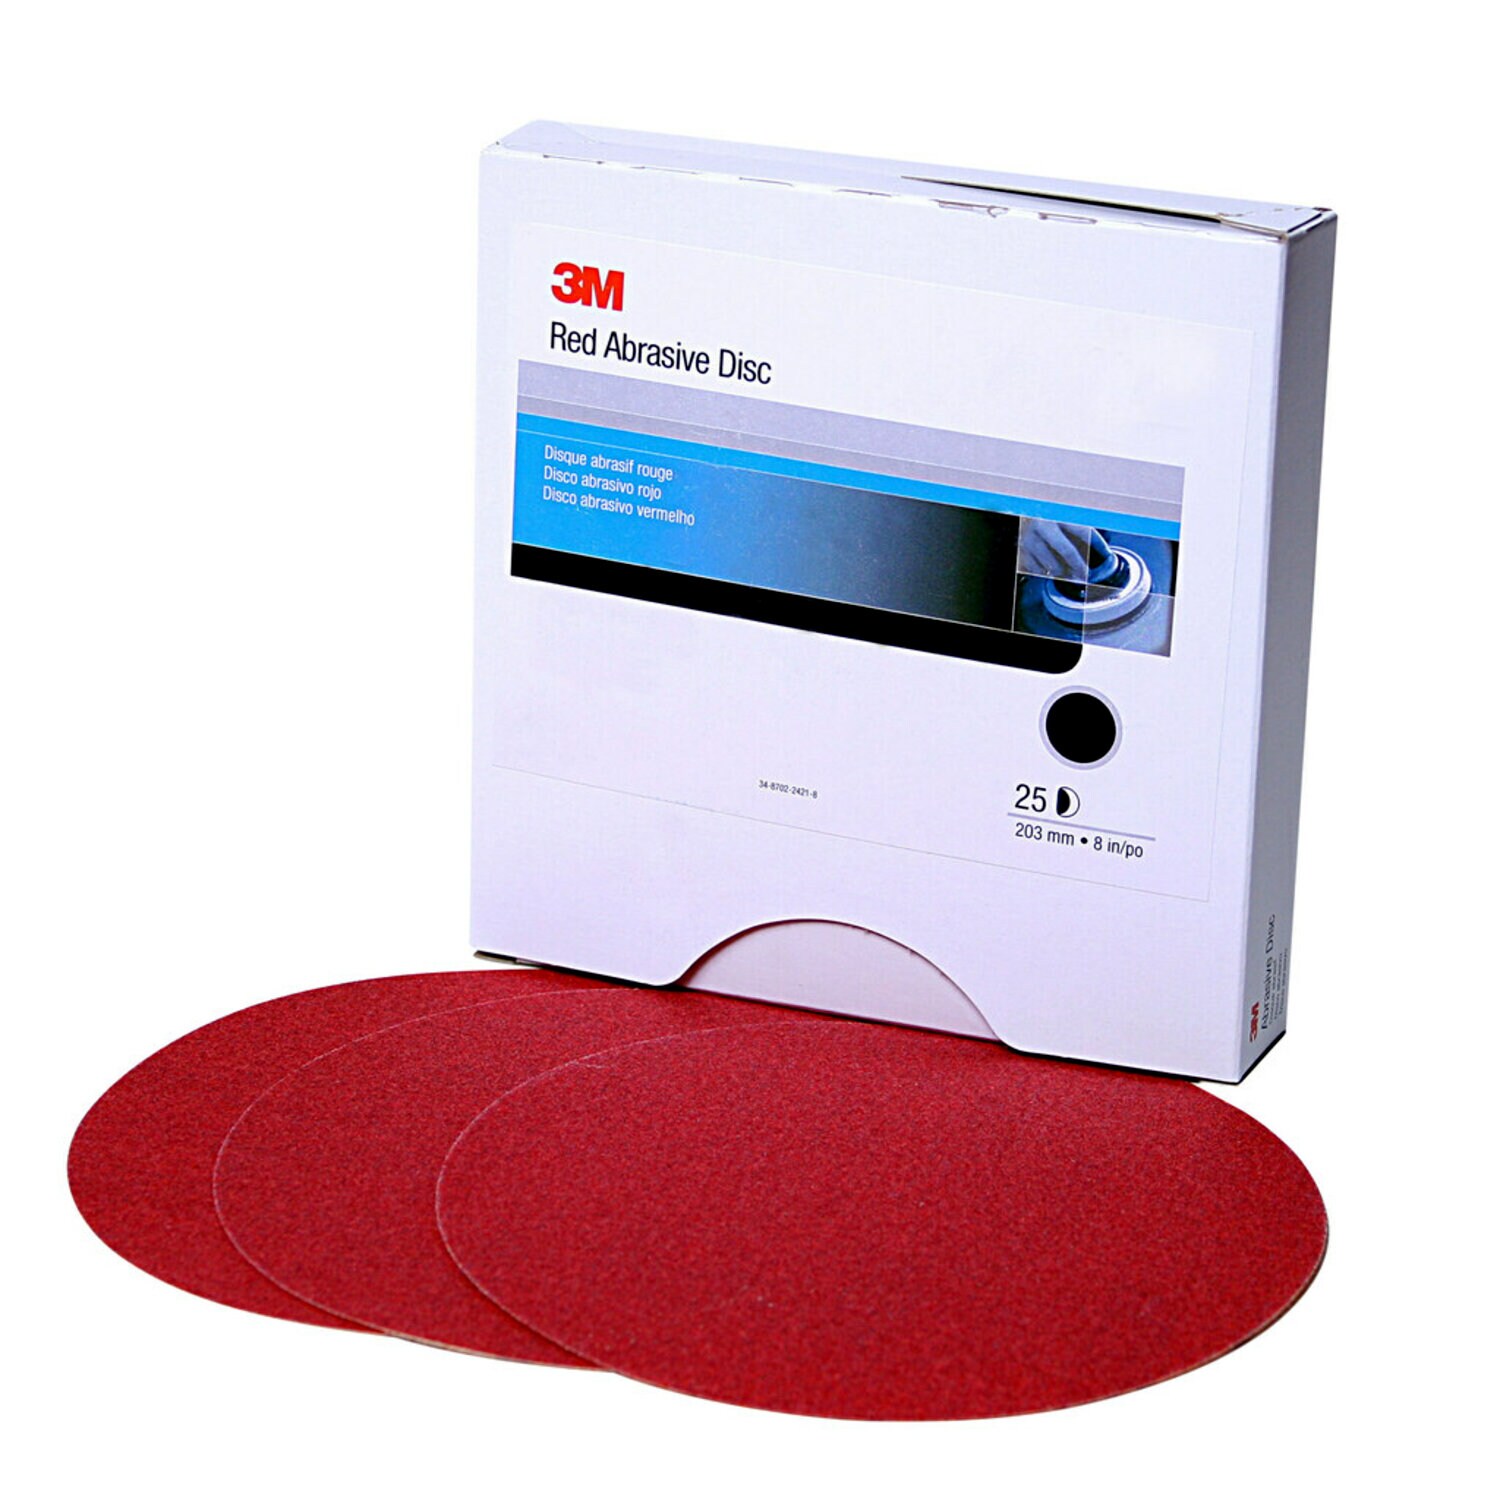 7000119767 - 3M Red Abrasive Stikit Disc, 01110, 6 in, P240 grade, 100 discs per
roll, 6 rolls per case